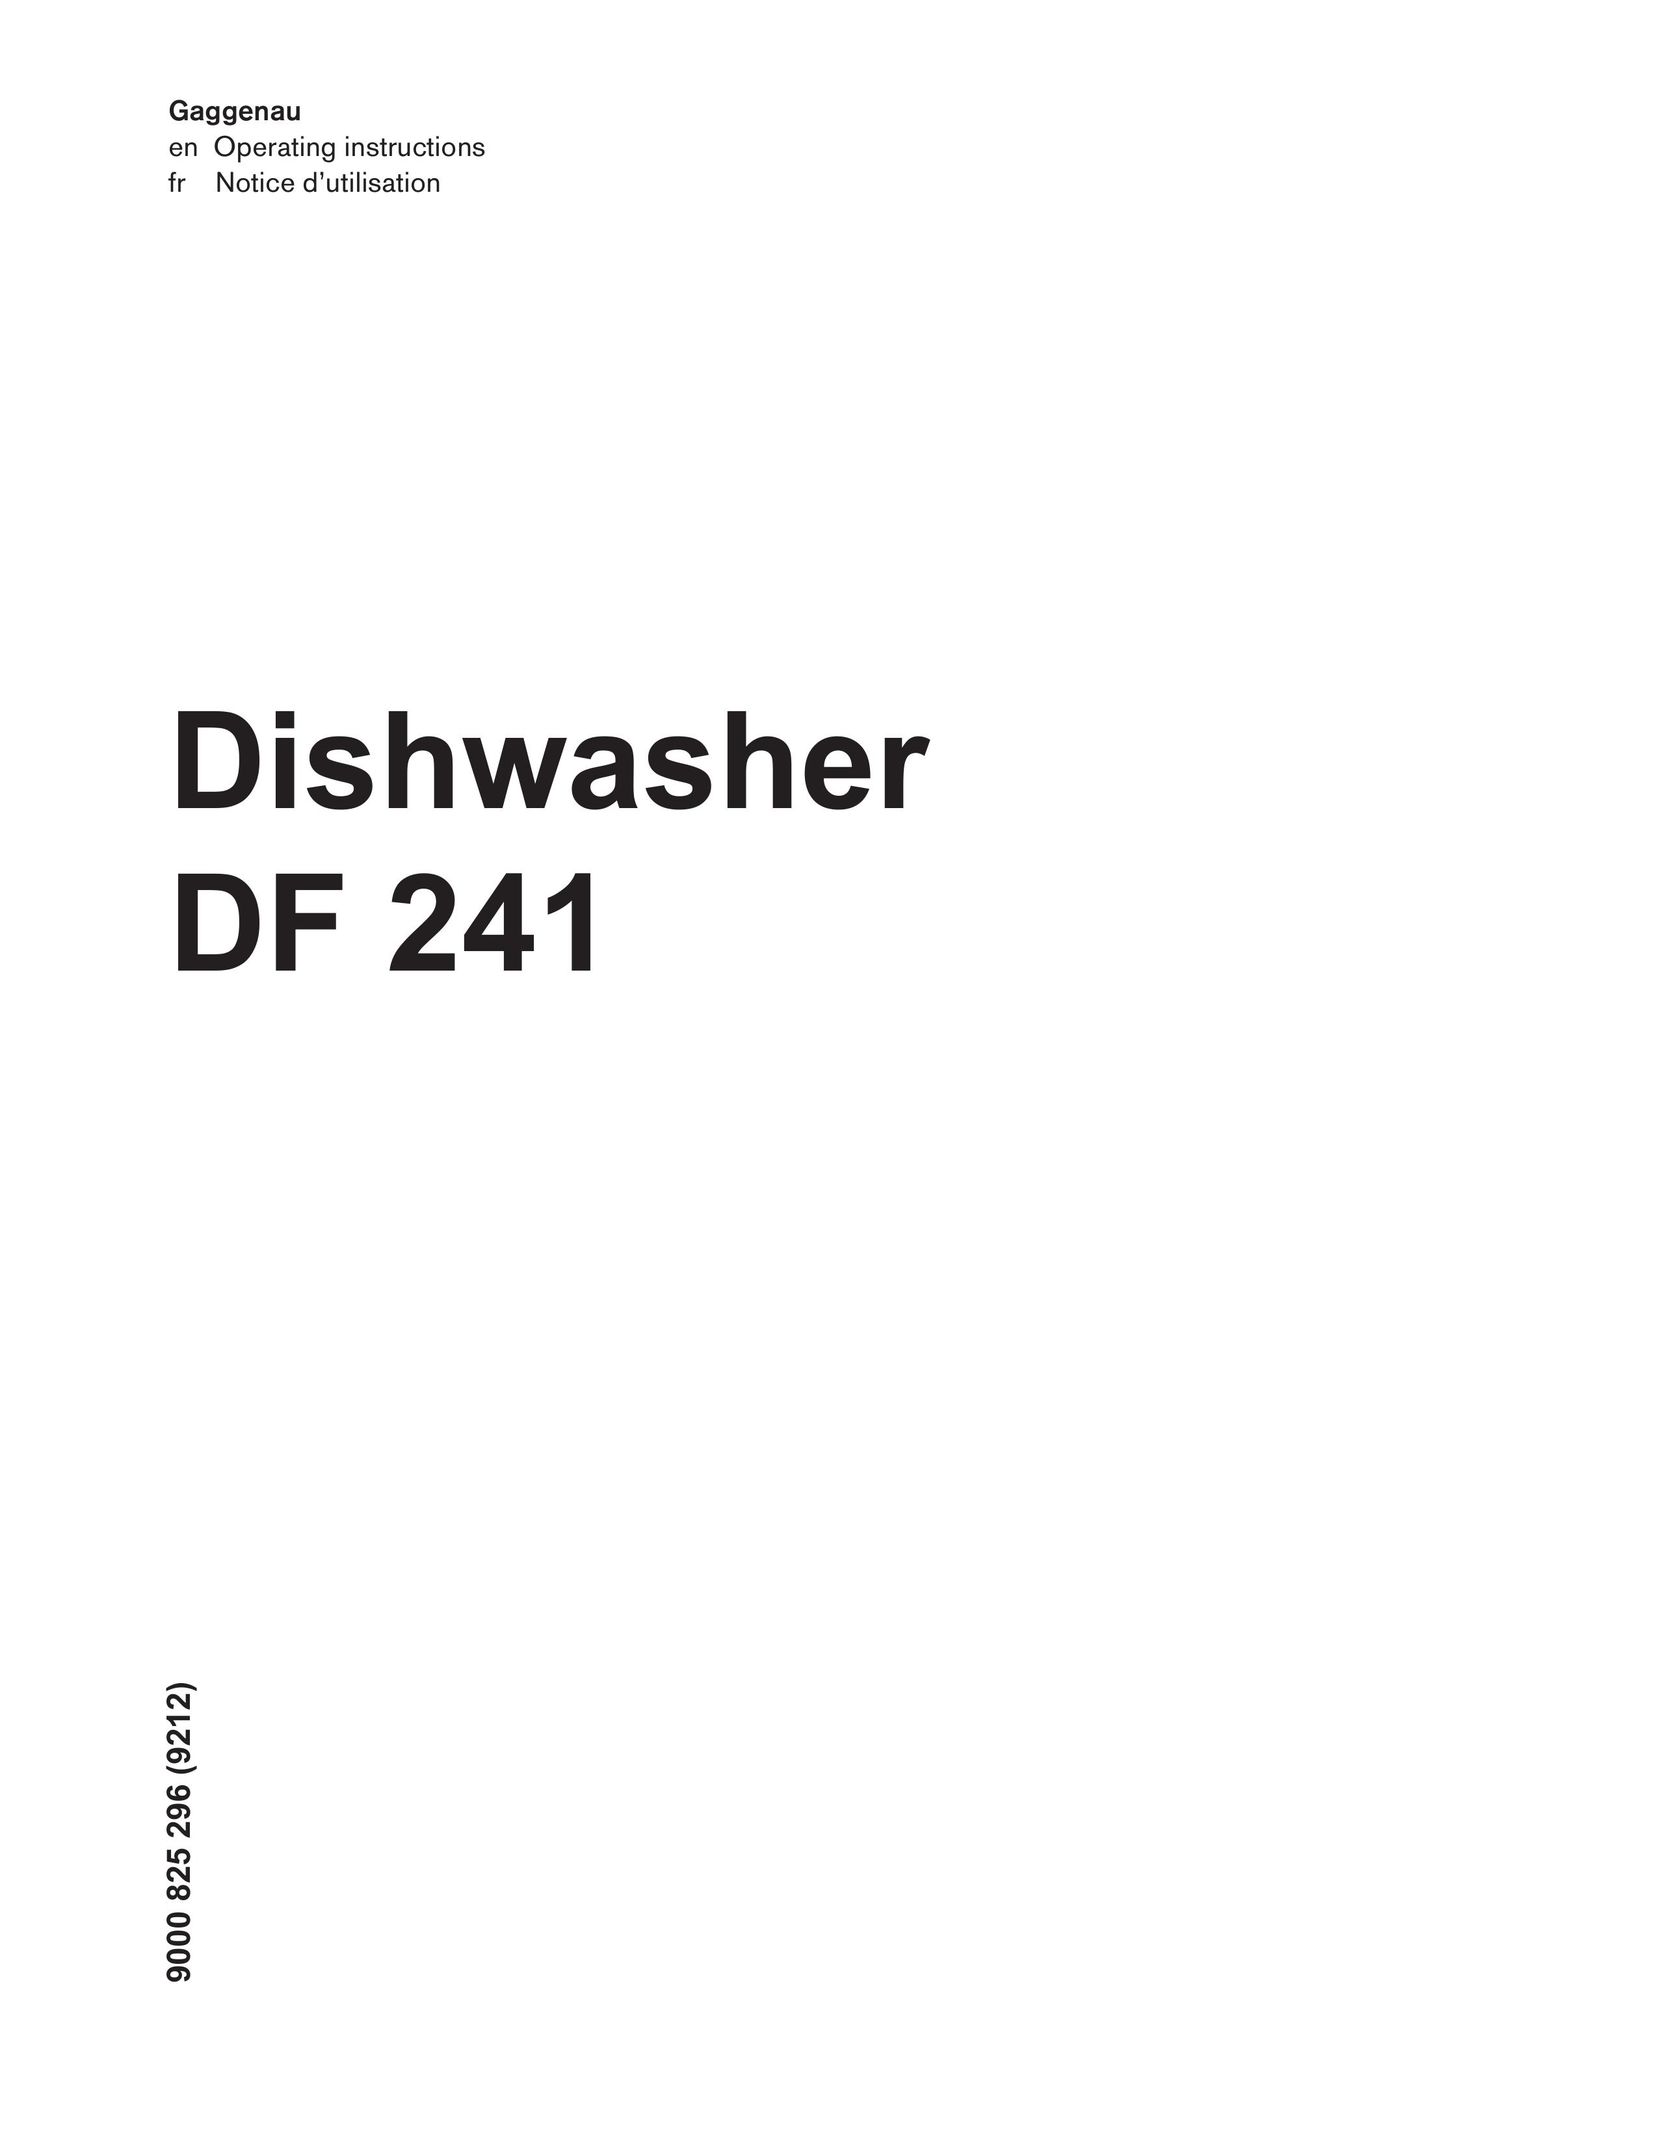 Gaggenau DF 241 Dishwasher User Manual